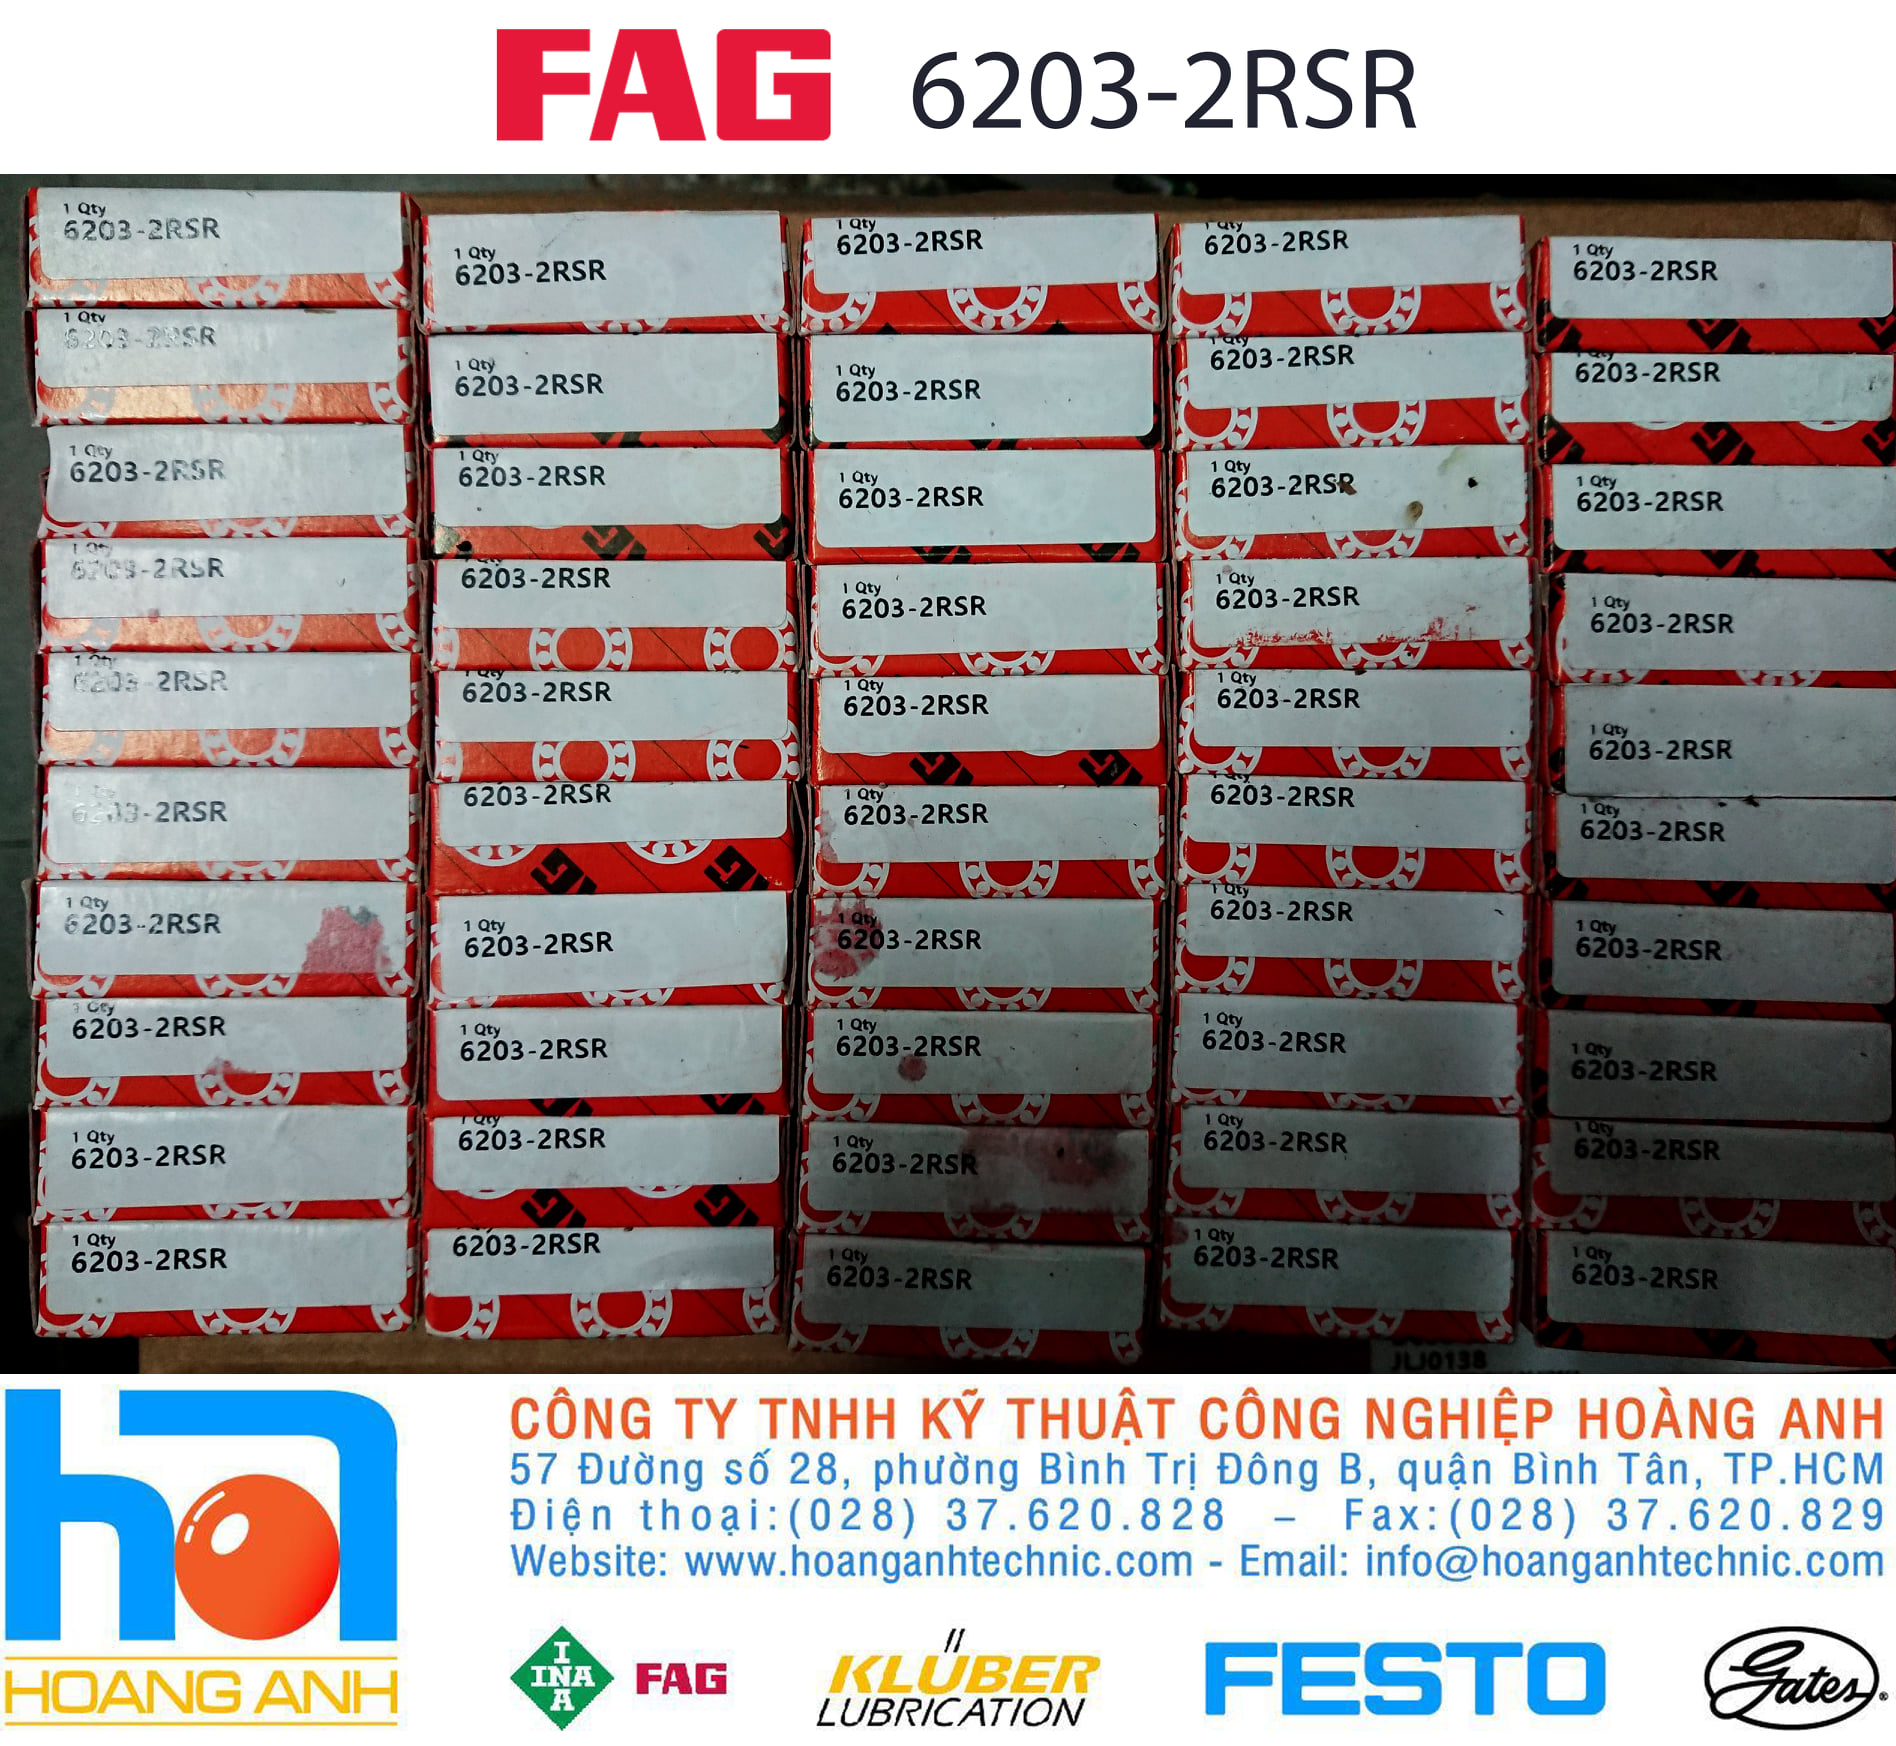 FAG 6203-2RSR